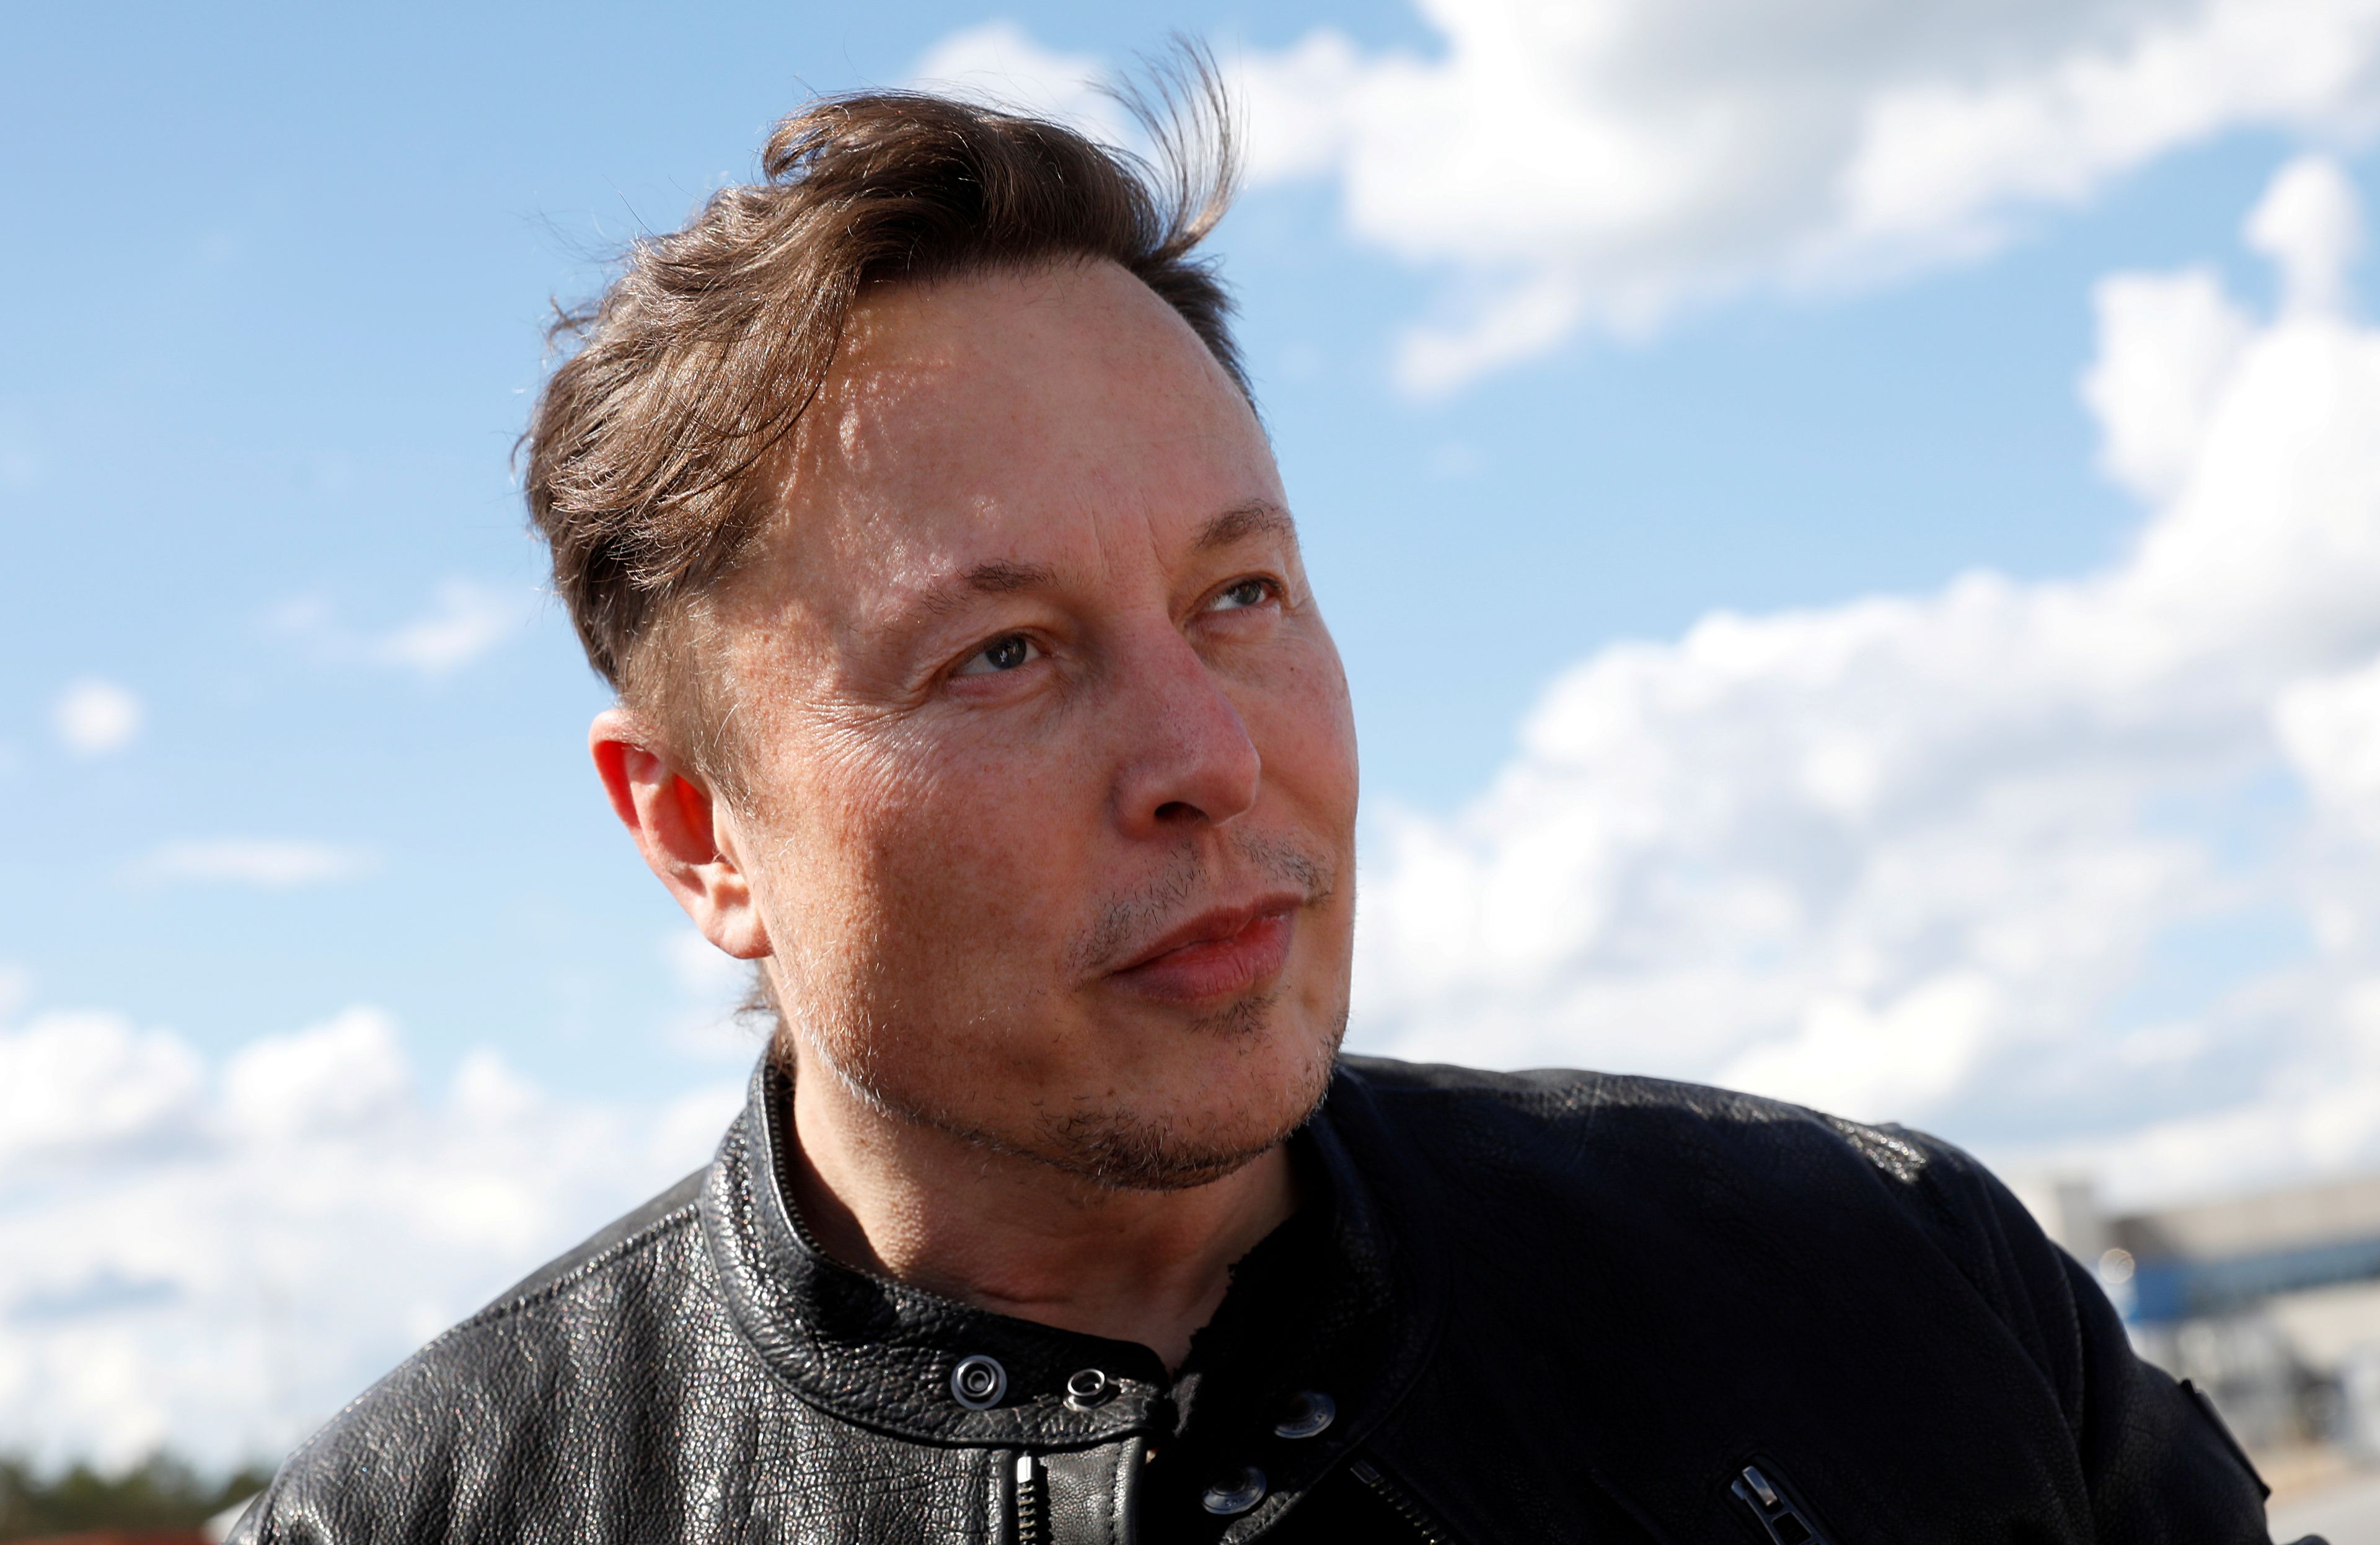 Las 24 frases más inspiradoras de Elon Musk: sobre la pasión, el talento, la vida y no rendirse nunca